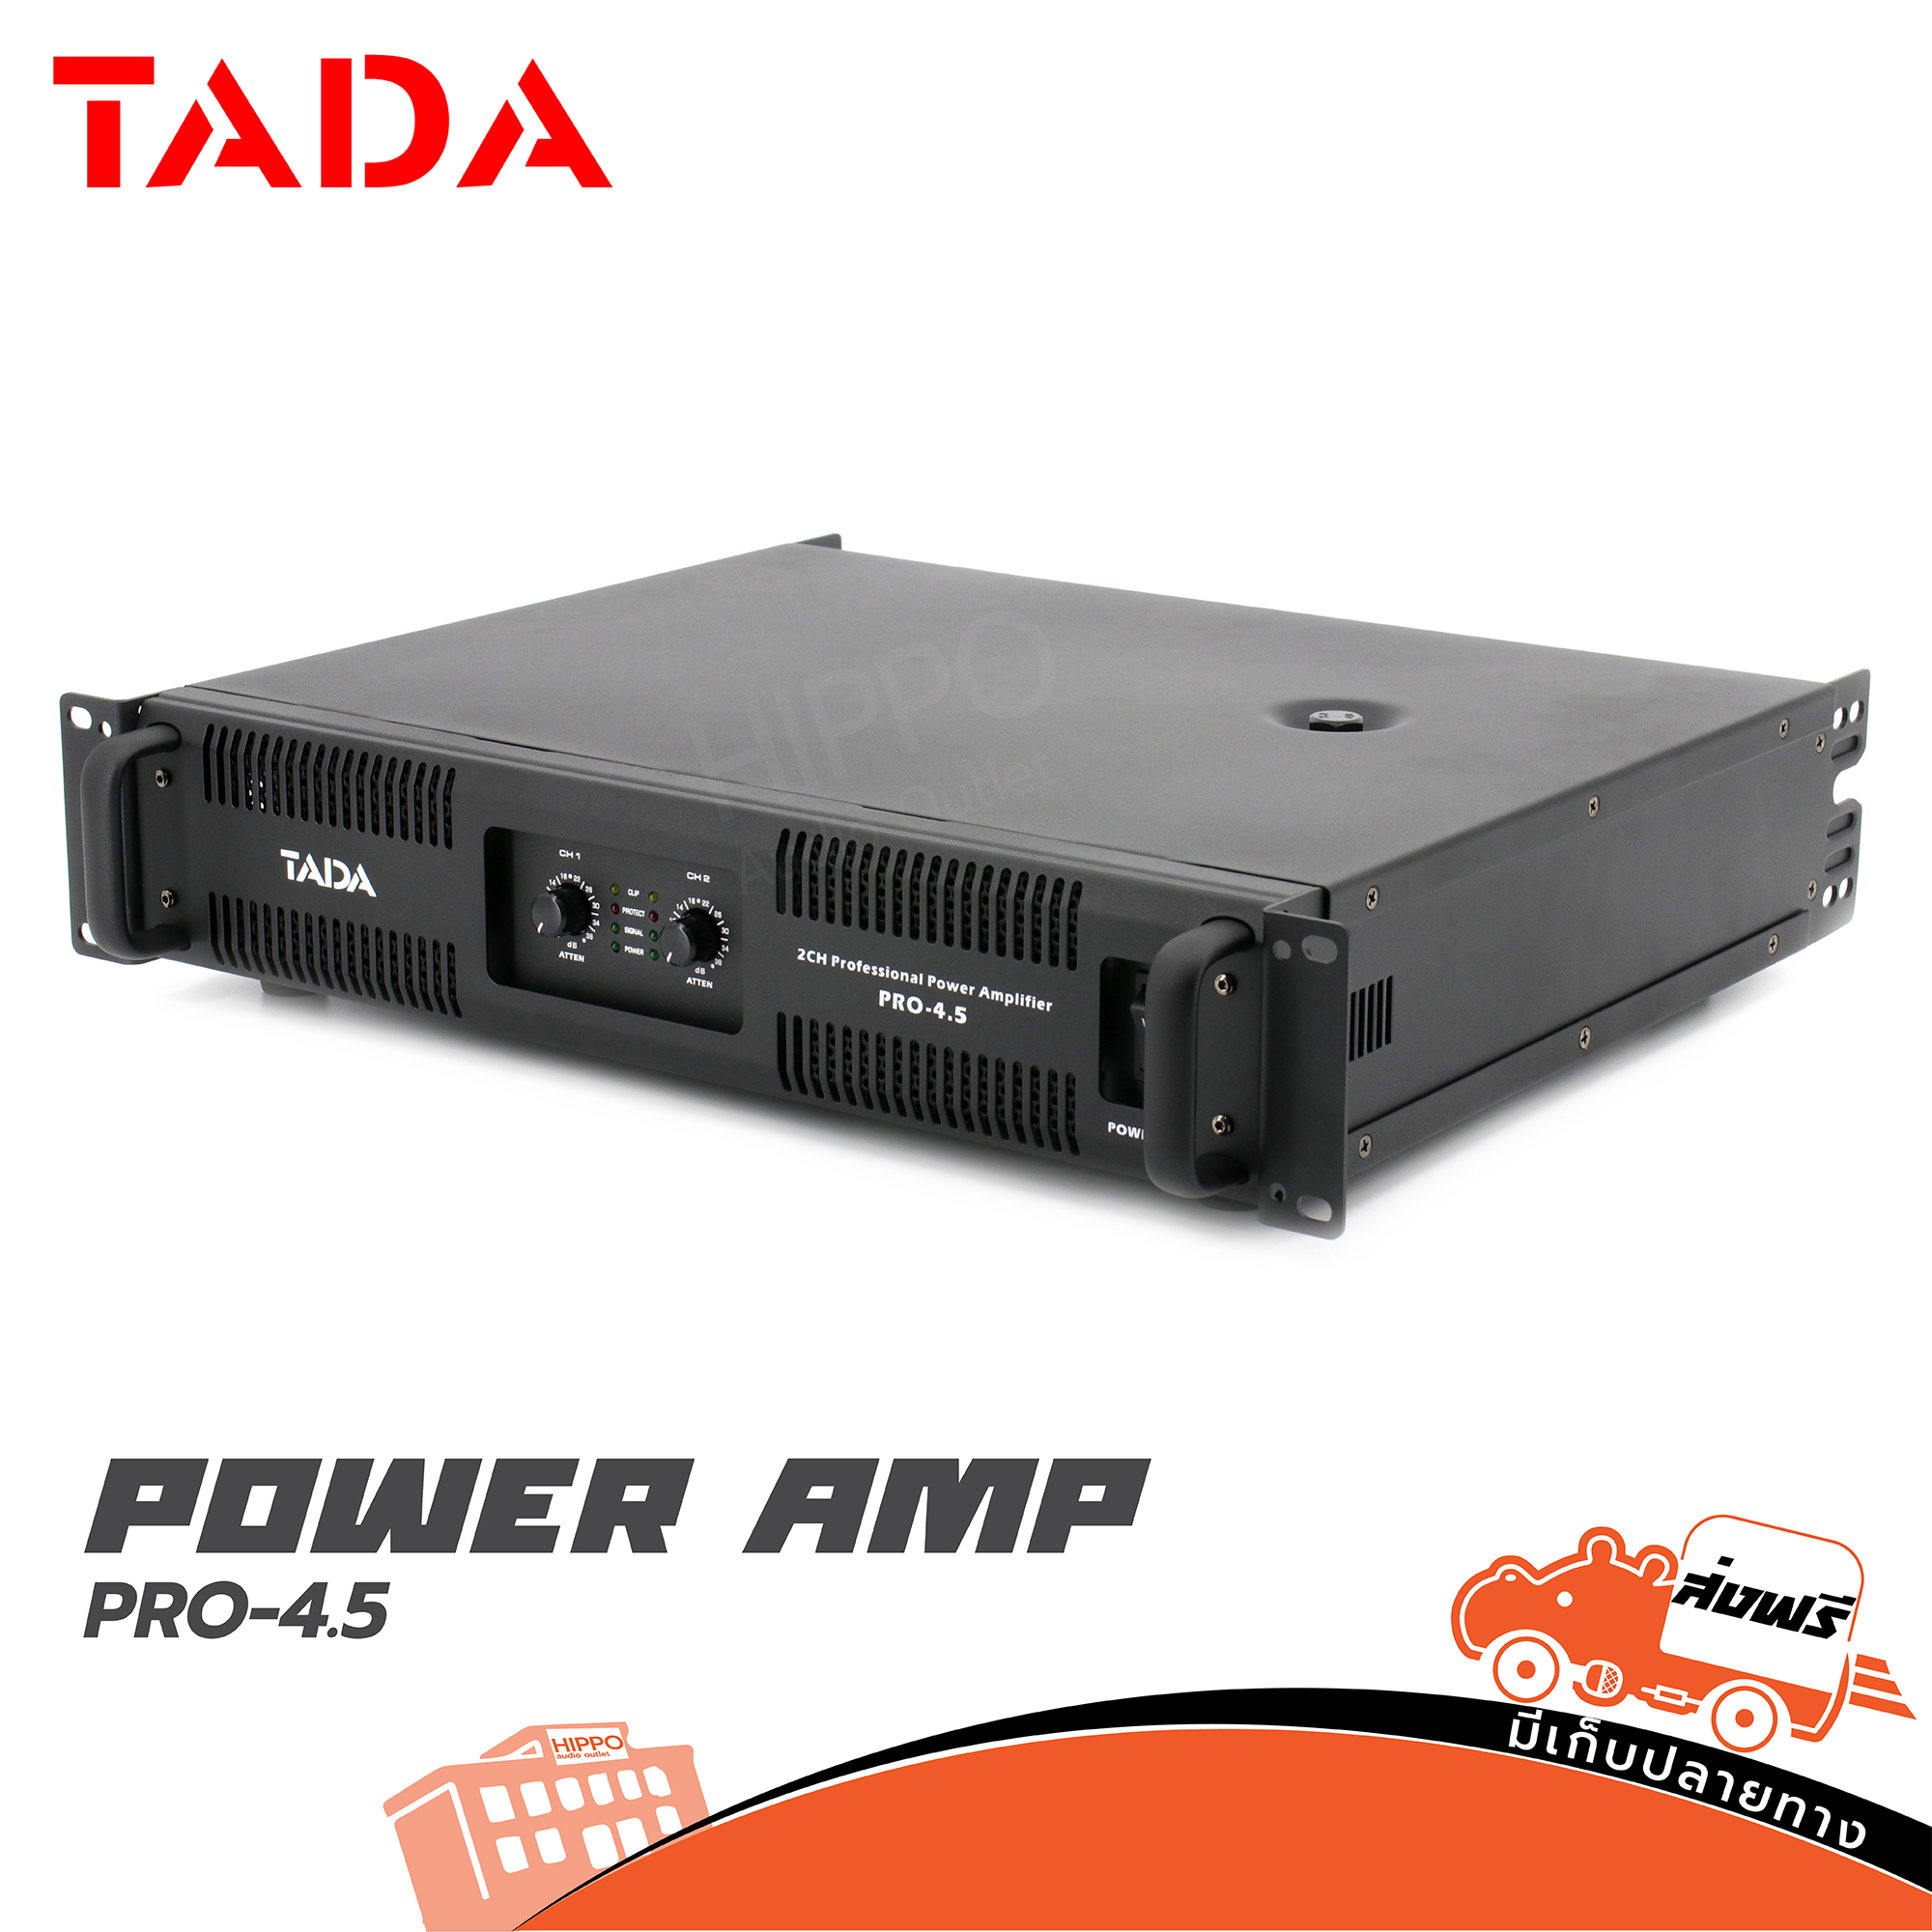 เพาเวอร์แอมป์ TADA รุ่น PRO 4.5 คลาส D กำลังขับ 900w x 2 ที่ 4ohm Stereo PRO-4.5 ขยาย แอมป์ ขนาด 2U ฮิปโป ออดิโอ Hippo Audio